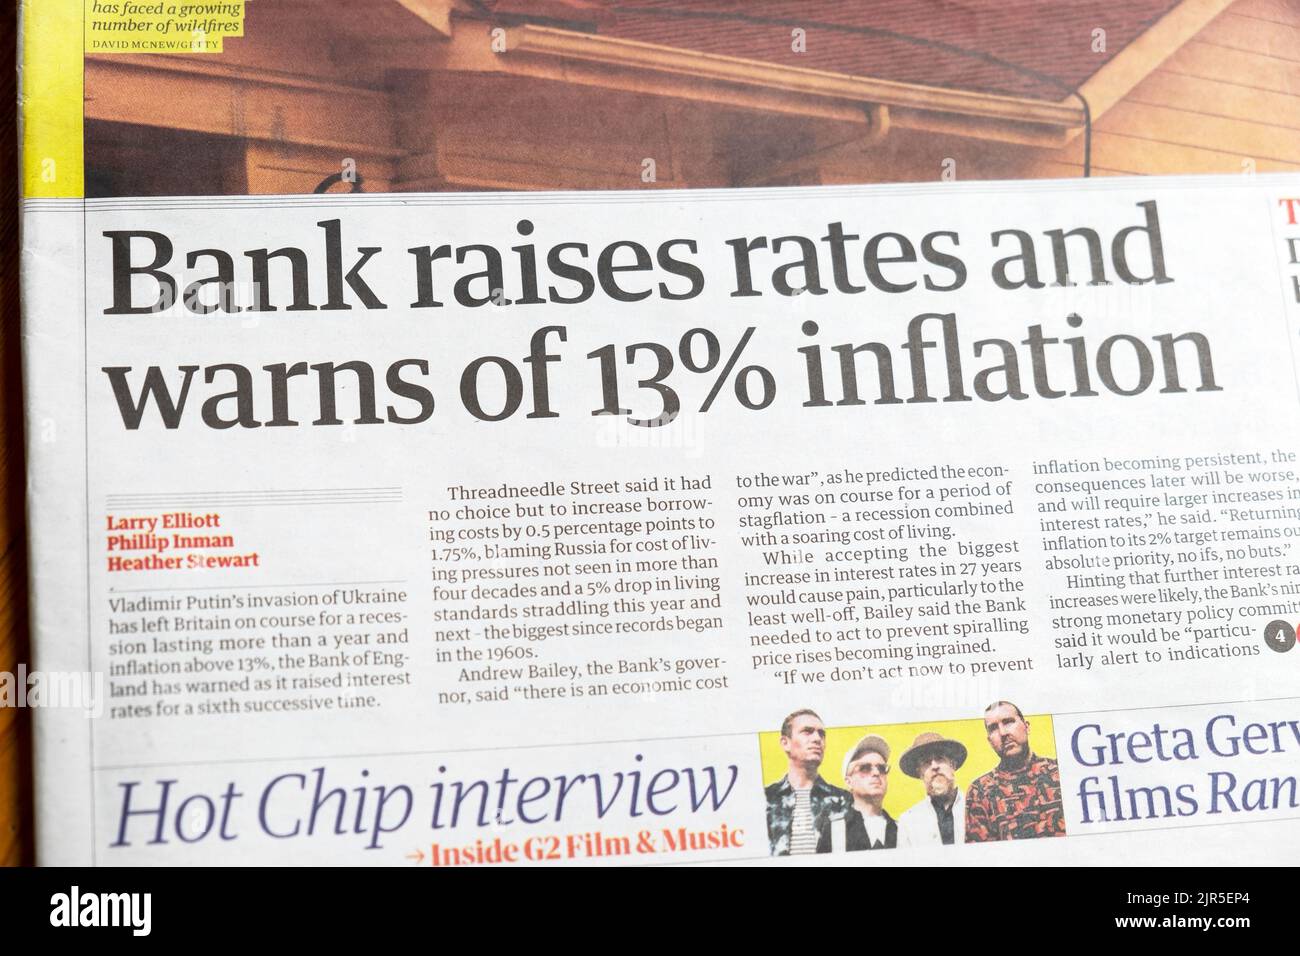 'Banca alza i tassi e avverte di inflazione del 13%' Guardian giornale headline clipping articolo finanziario 5 agosto 2022 Londra Inghilterra Regno Unito Gran Bretagna Foto Stock